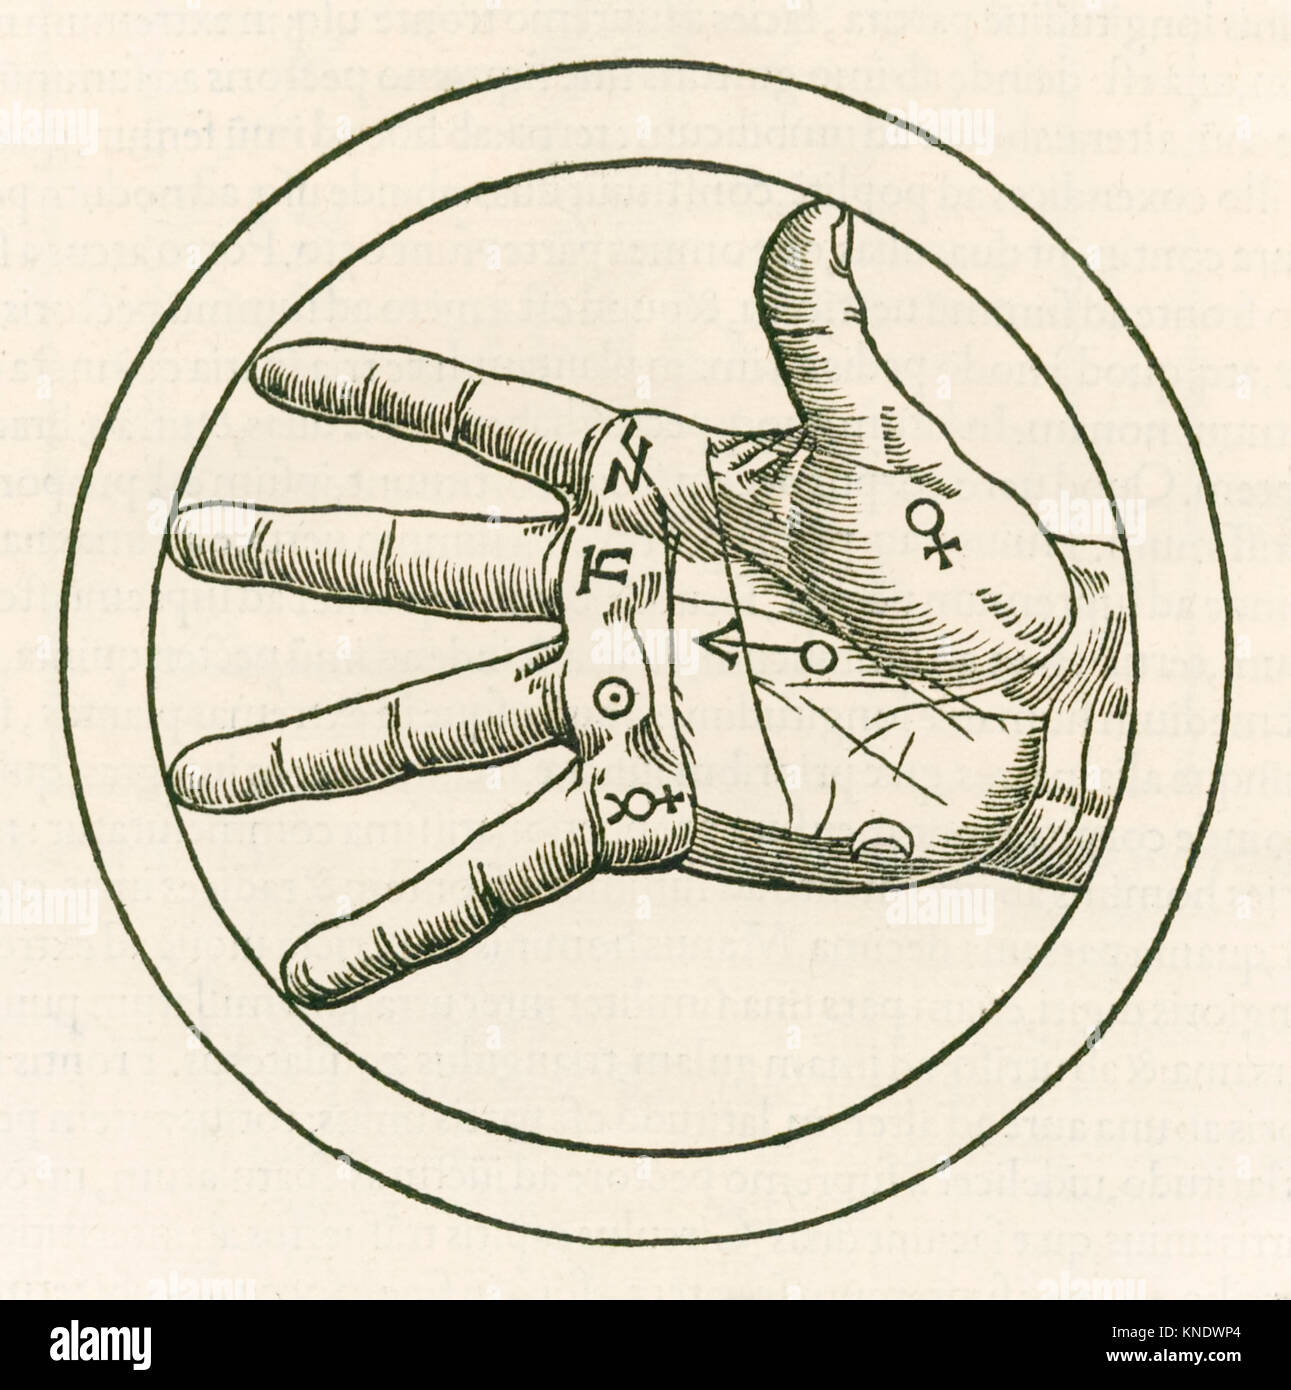 "La mano de la quiromancia" grabado de Heinrich Cornelius Agrippa von Nettesheim (1486-1535) 'De Occulta Philosophia libri tres' (tres libros de la filosofía oculta), publicado en 1533. Ver más información a continuación. Foto de stock